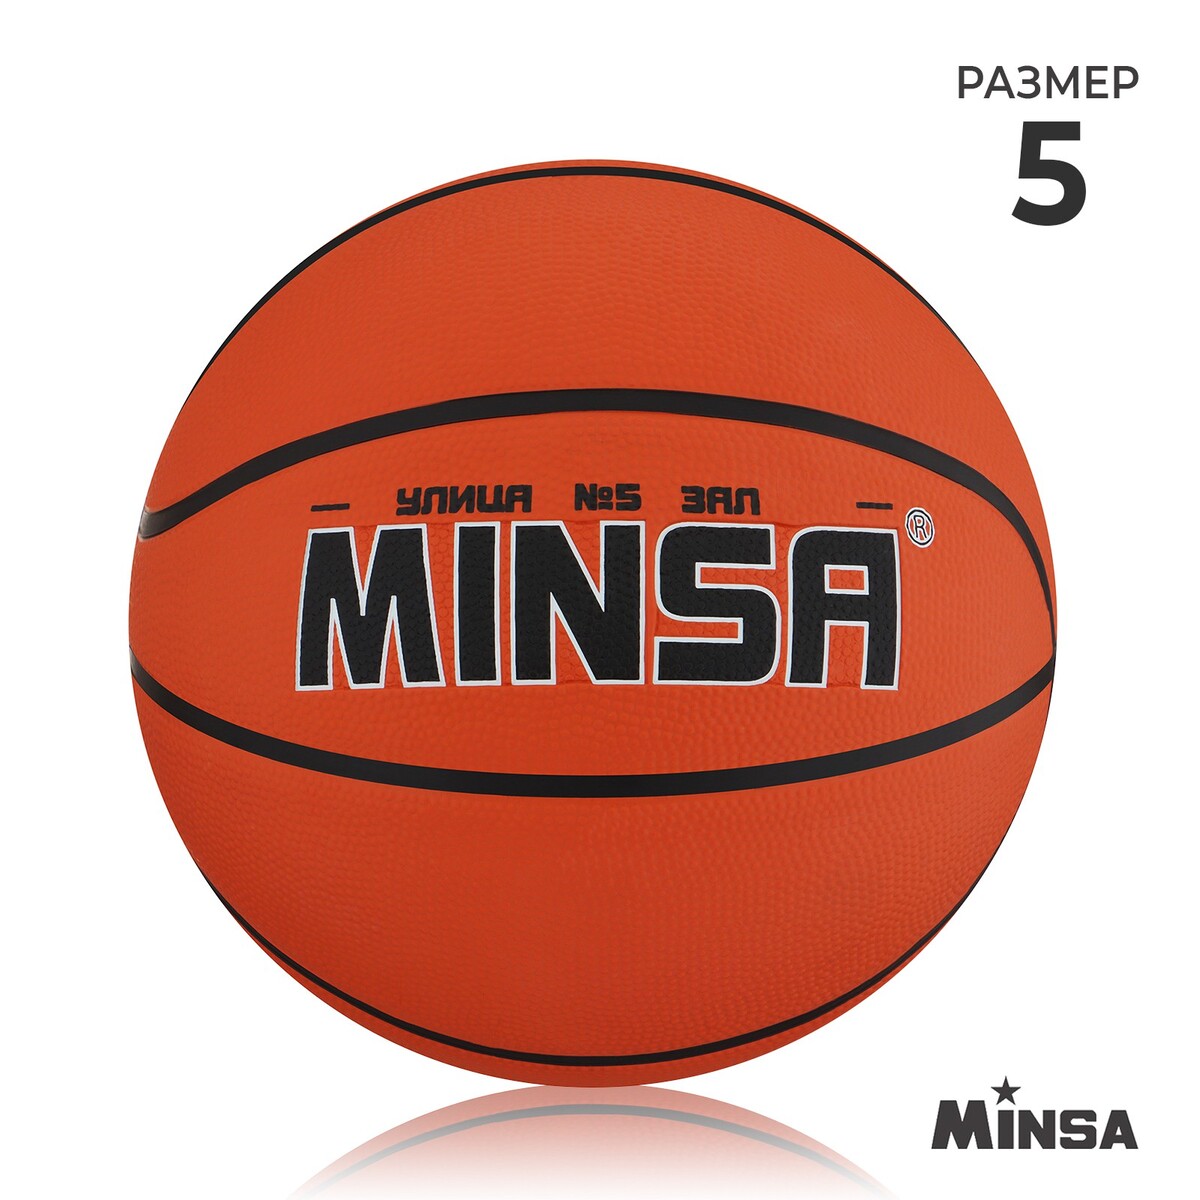 Мяч баскетбольный minsa, пвх, клееный, 8 панелей, р. 5 мяч баскетбольный minsa street пвх клееный 8 панелей р 7